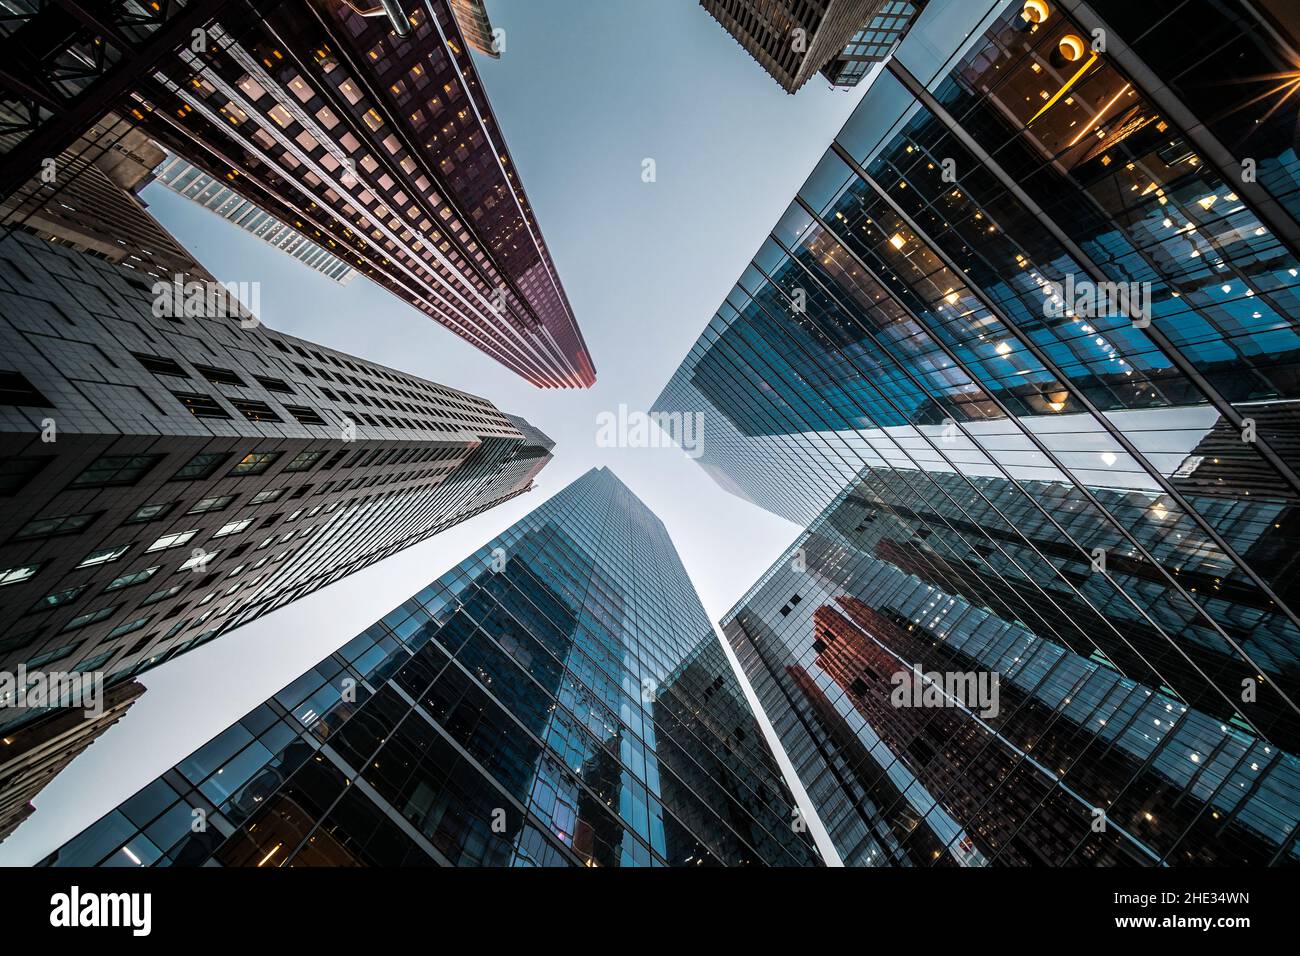 Concepto de negocios y finanzas, mirando la arquitectura de edificios de oficinas de gran altura en el distrito financiero de una metrópolis moderna. Foto de stock